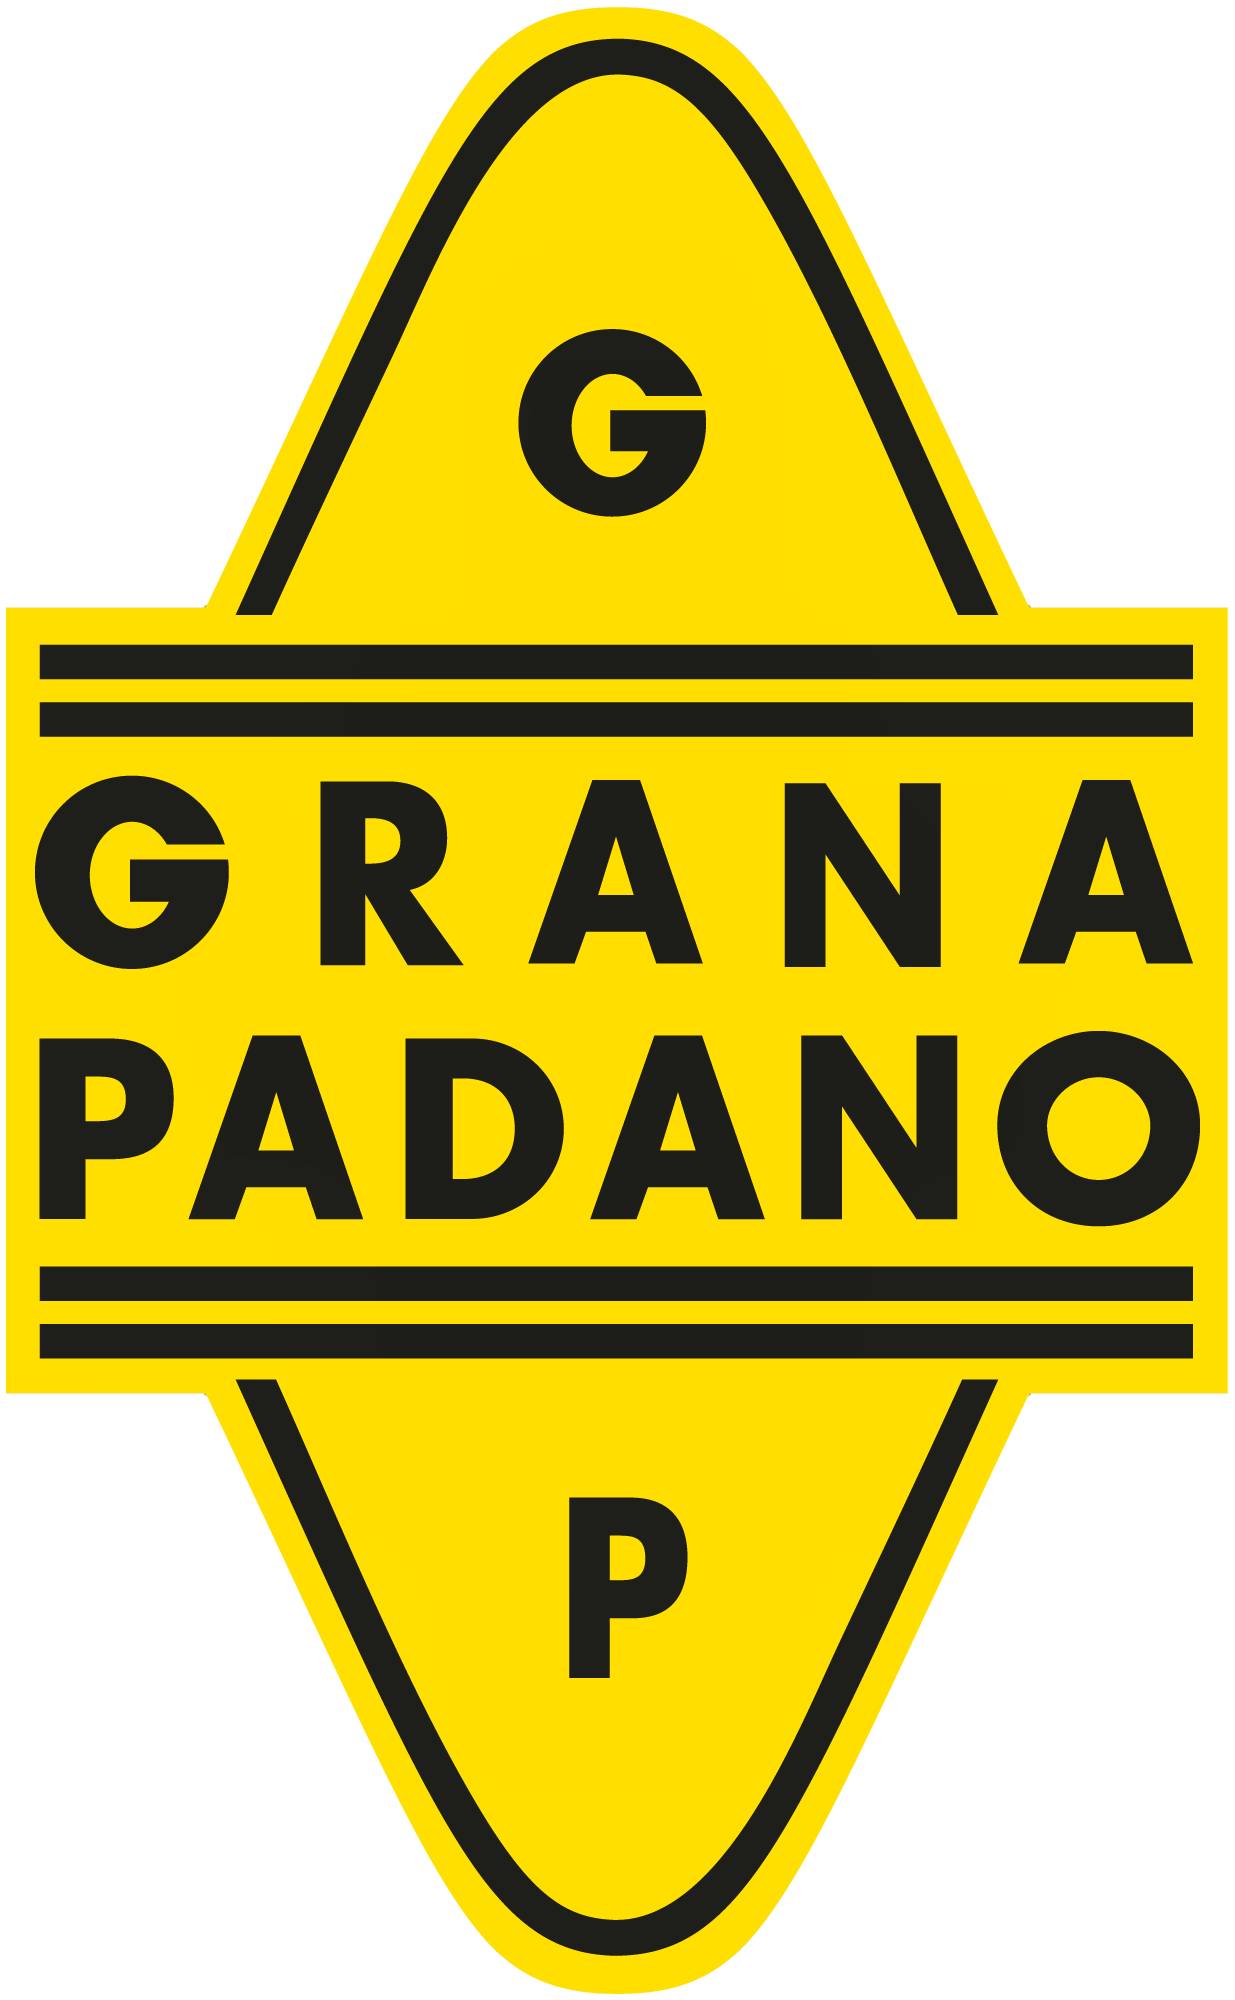 Grana Padano cheese brand